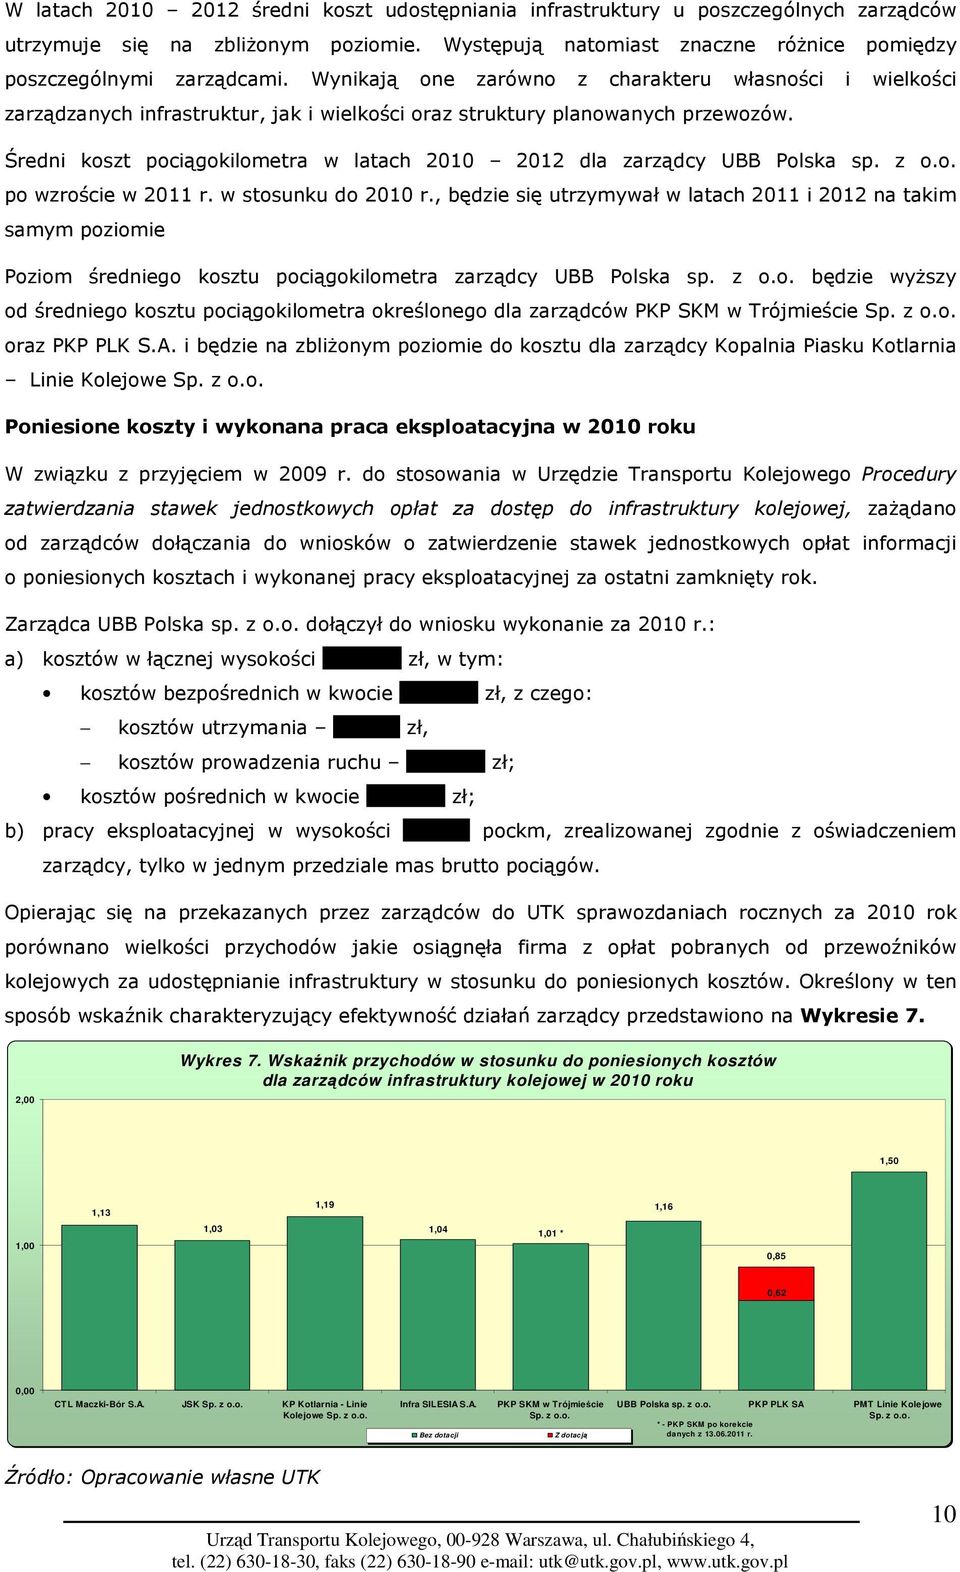 Średni koszt pociągokilometra w latach 2010 2012 dla zarządcy UBB Polska sp. z o.o. po wzroście w 2011 r. w stosunku do 2010 r.